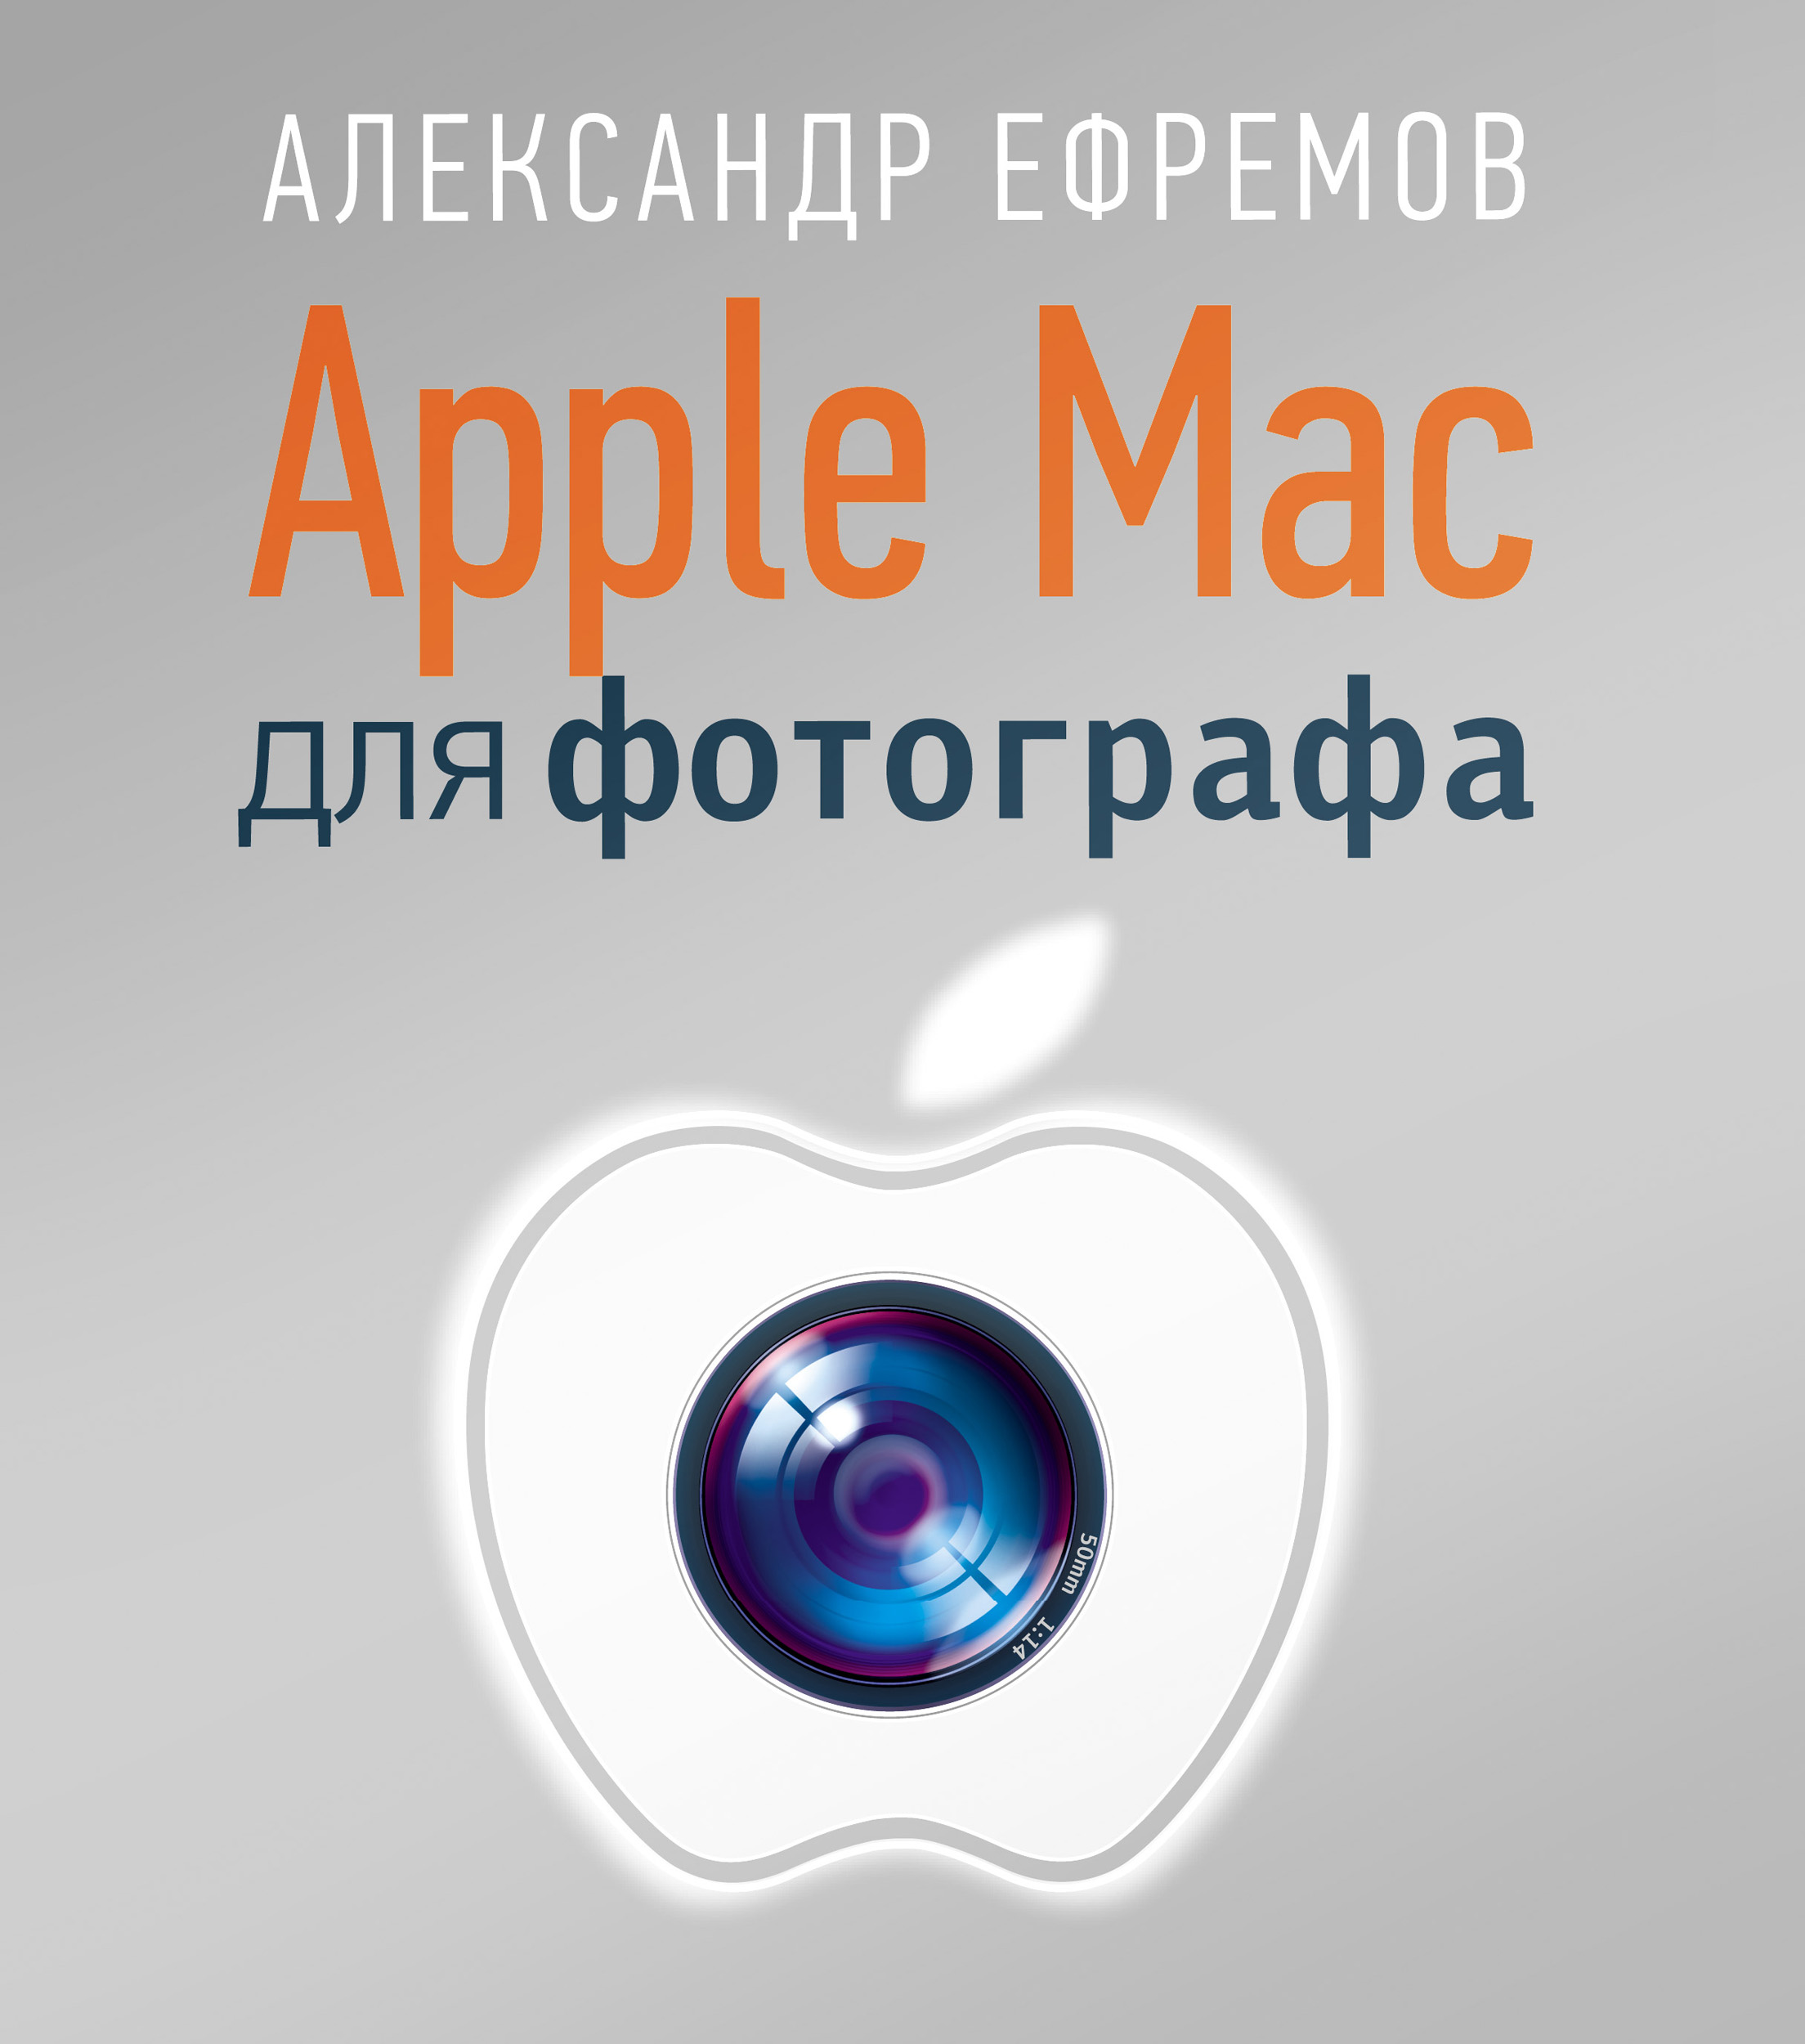 Книга Мастера фотографии Apple Mac для фотографа созданная Александр Ефремов может относится к жанру изобразительное искусство, программы. Стоимость электронной книги Apple Mac для фотографа с идентификатором 6058903 составляет 279.00 руб.